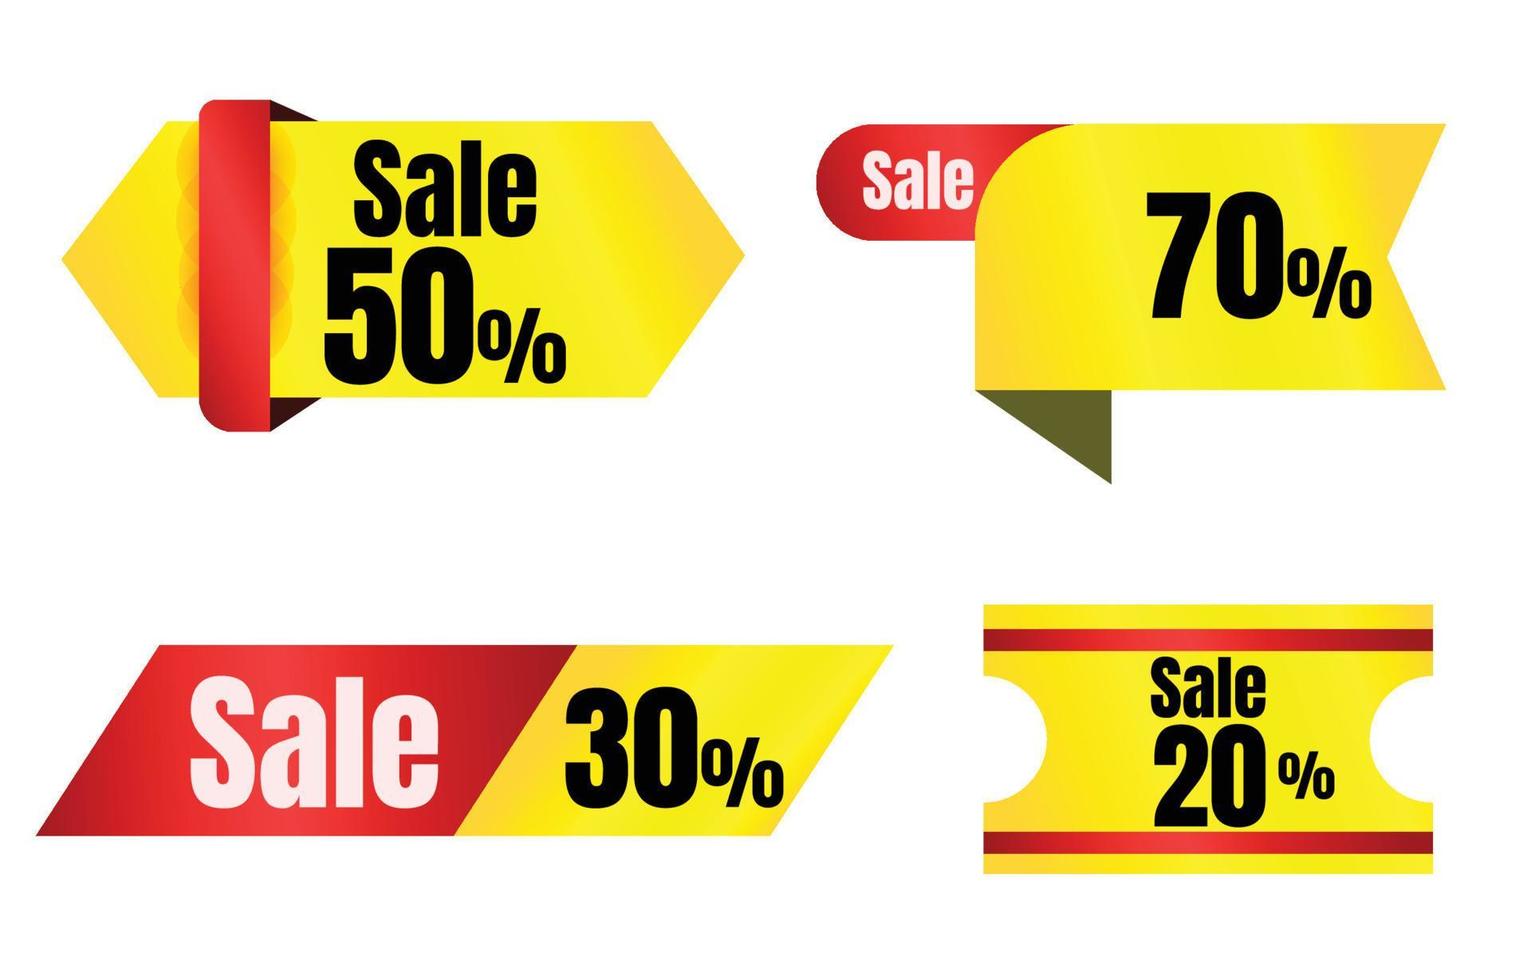 conjunto de banners de venta de colección, etiquetas de descuento rojas y amarillas y etiqueta de ofertas especiales de sitio web moderno sobre fondo blanco, vector de ilustración de promoción de ventas en línea.